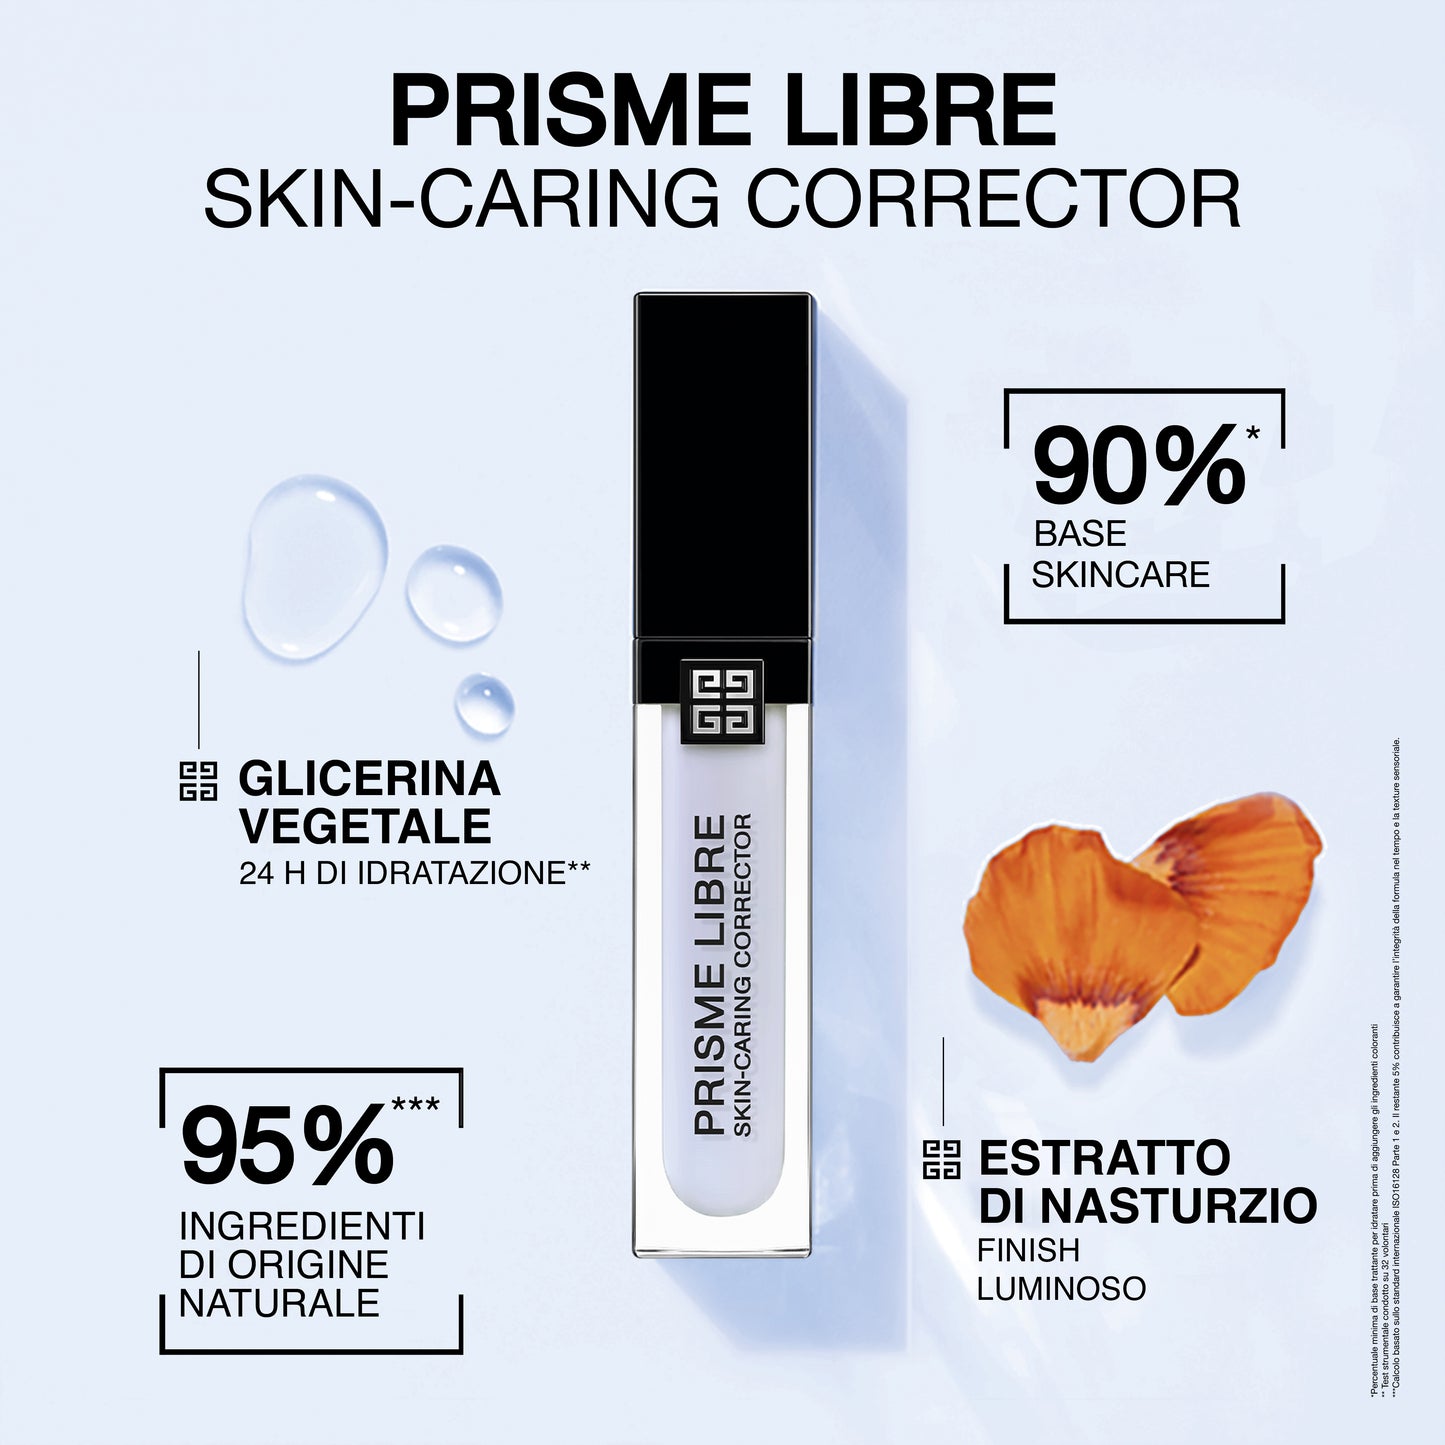 Prisme Libre Skin-Caring Corrector